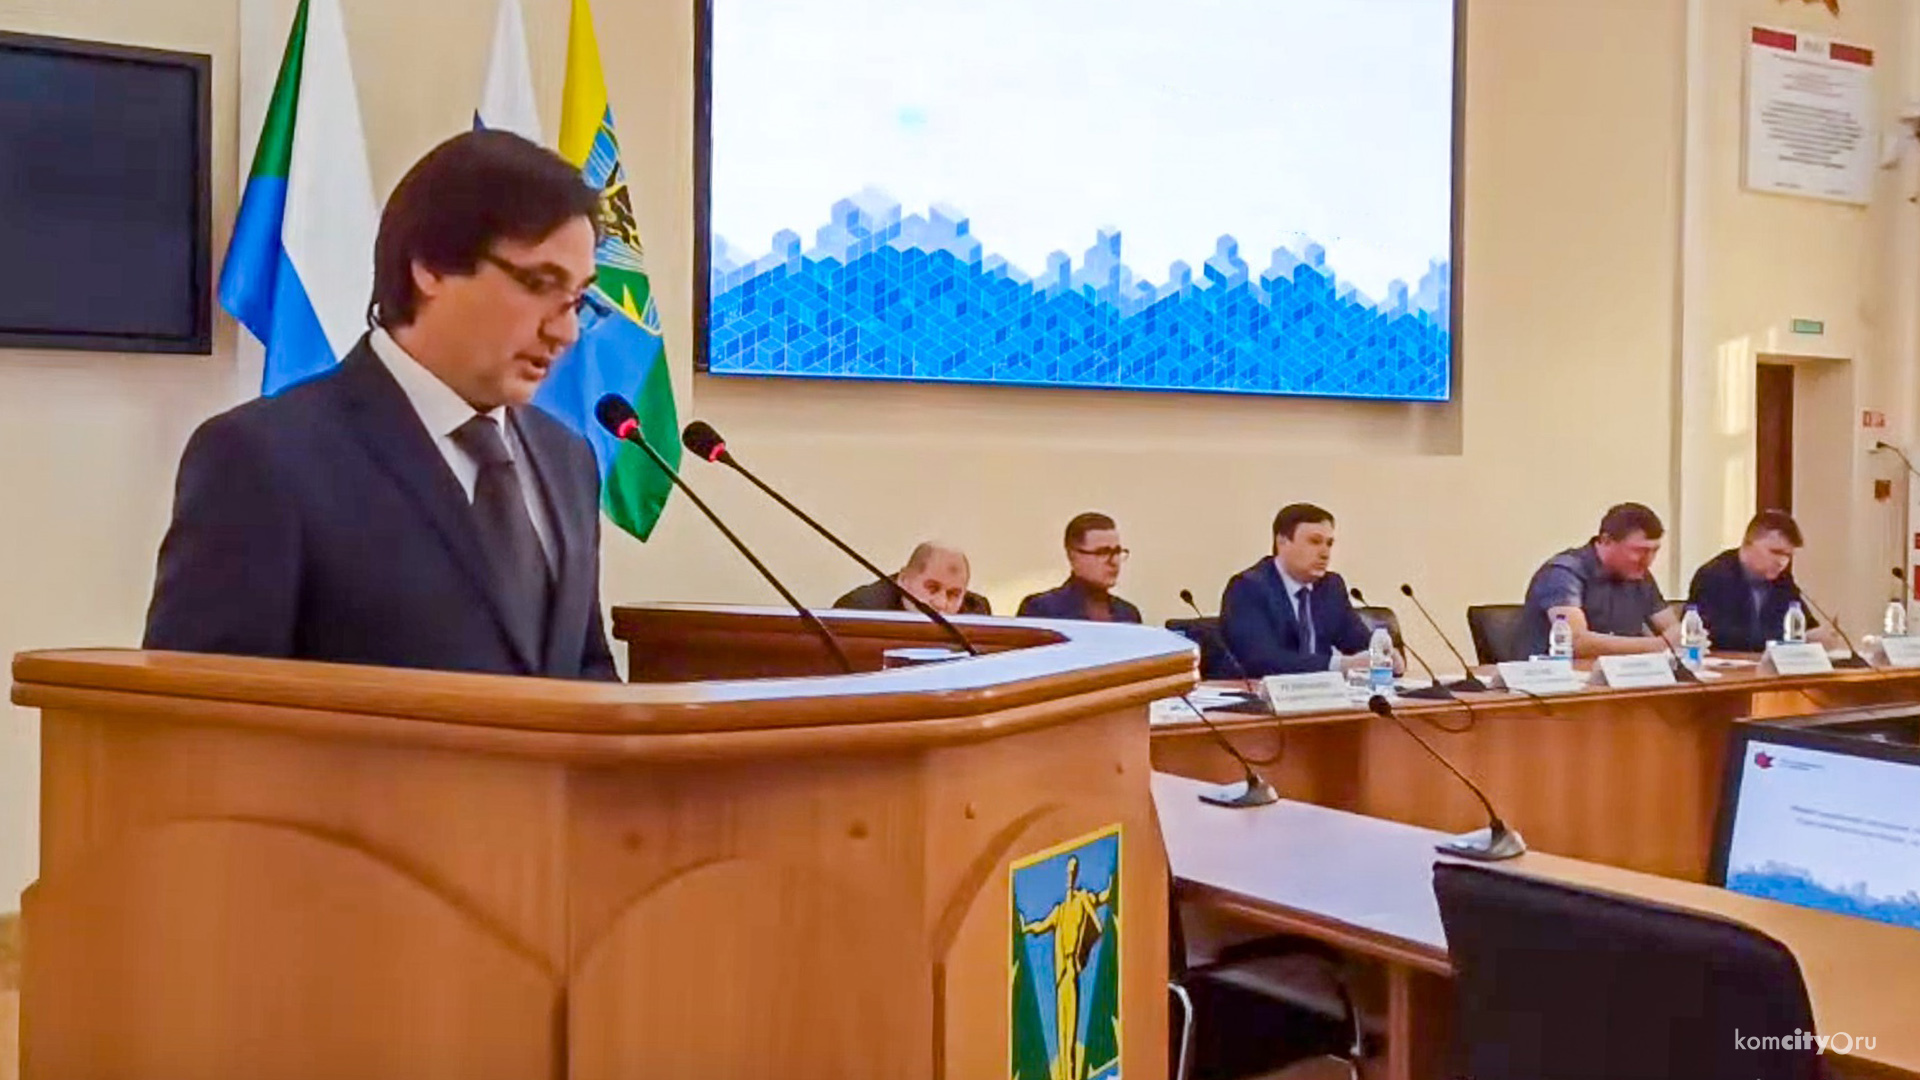 Последствия паводка и проблемы транспортной доступности обсудят на Совете по предпринимательству в Комсомольске-на-Амуре